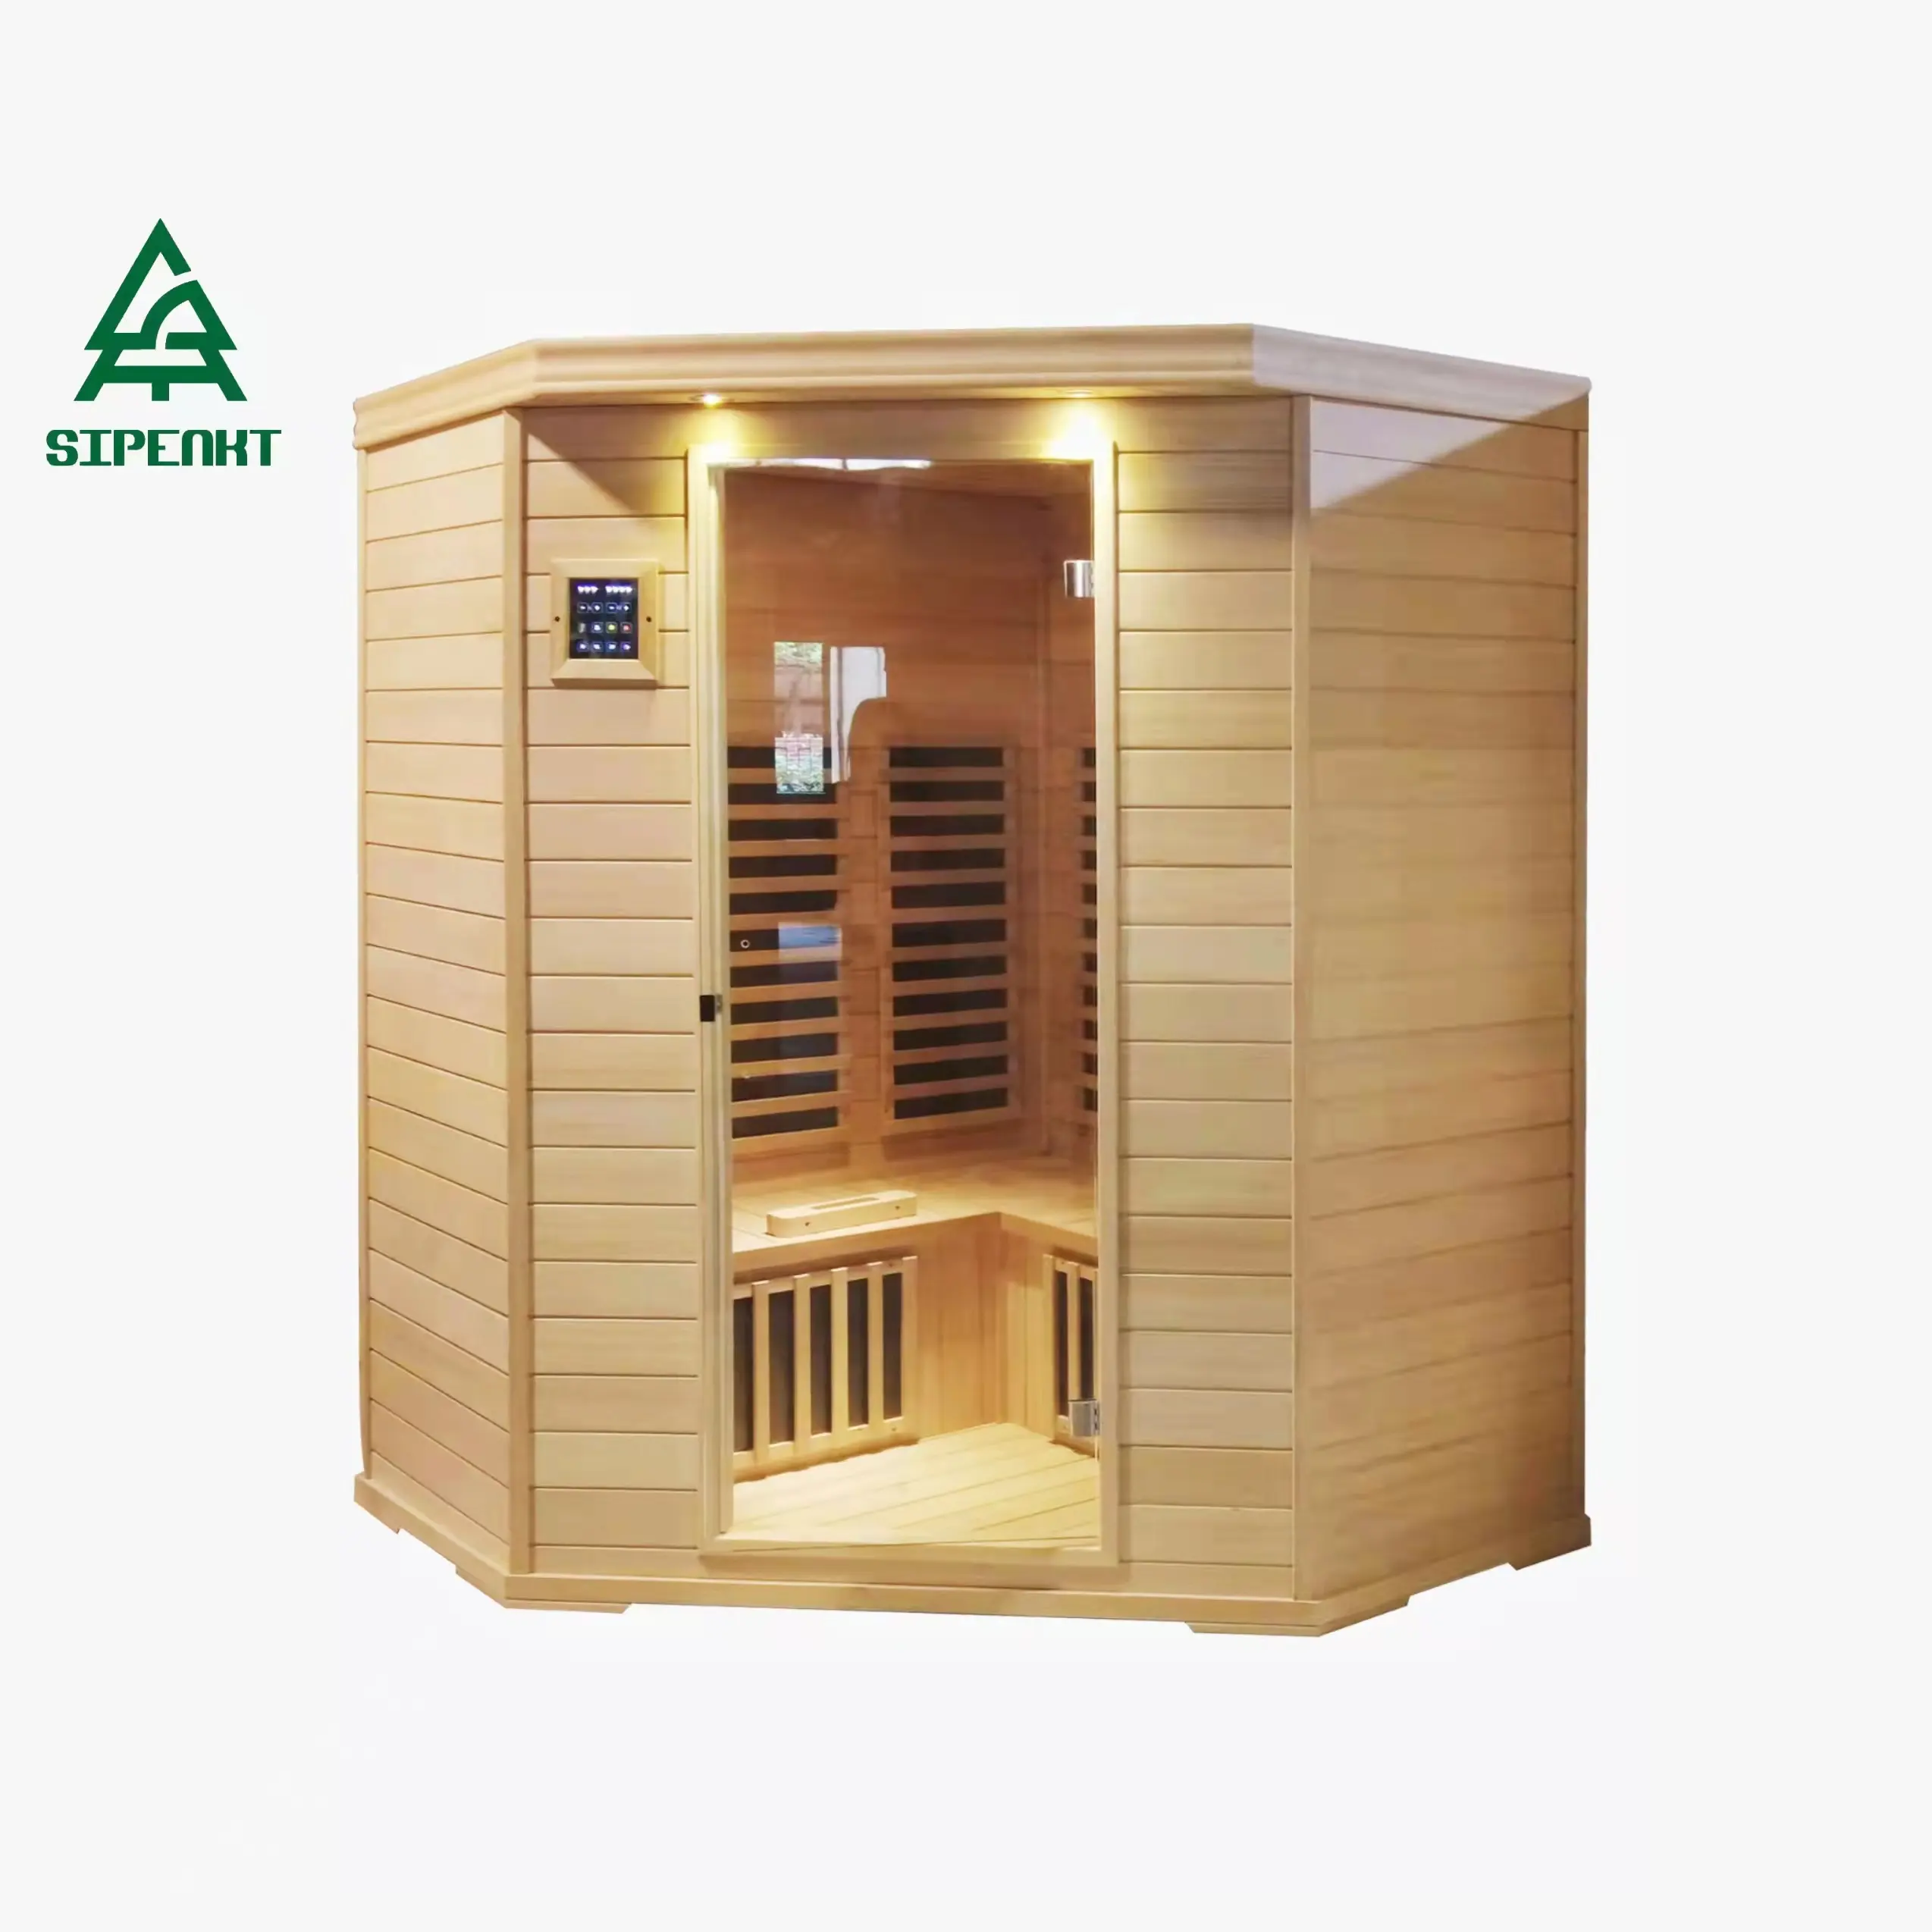 SIPENKT-sauna de madera con cicuta infrarroja, sistema de control de sauna controlado por ordenador de 2 plazas